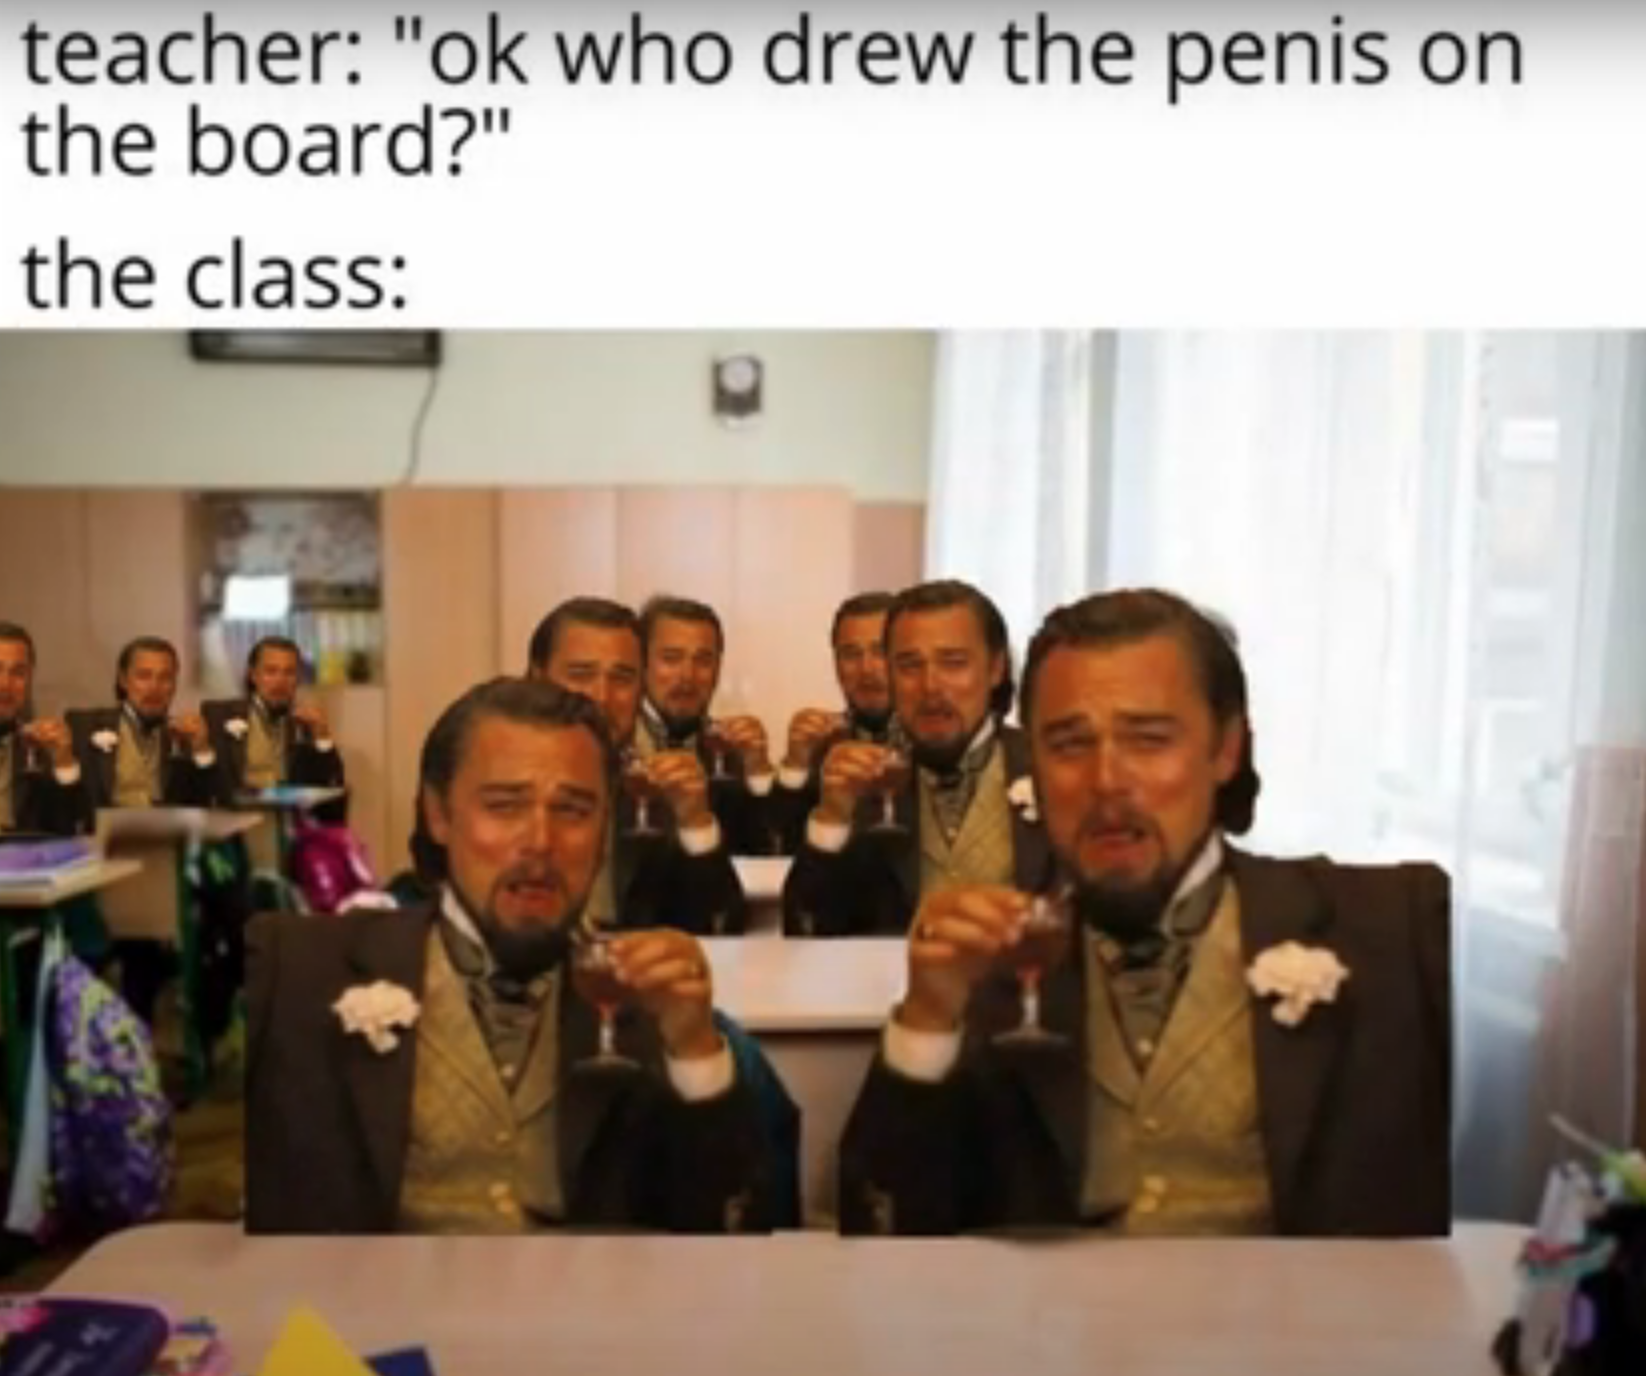 leonardo dicaprio laughing memes - educomp smart class - teacher